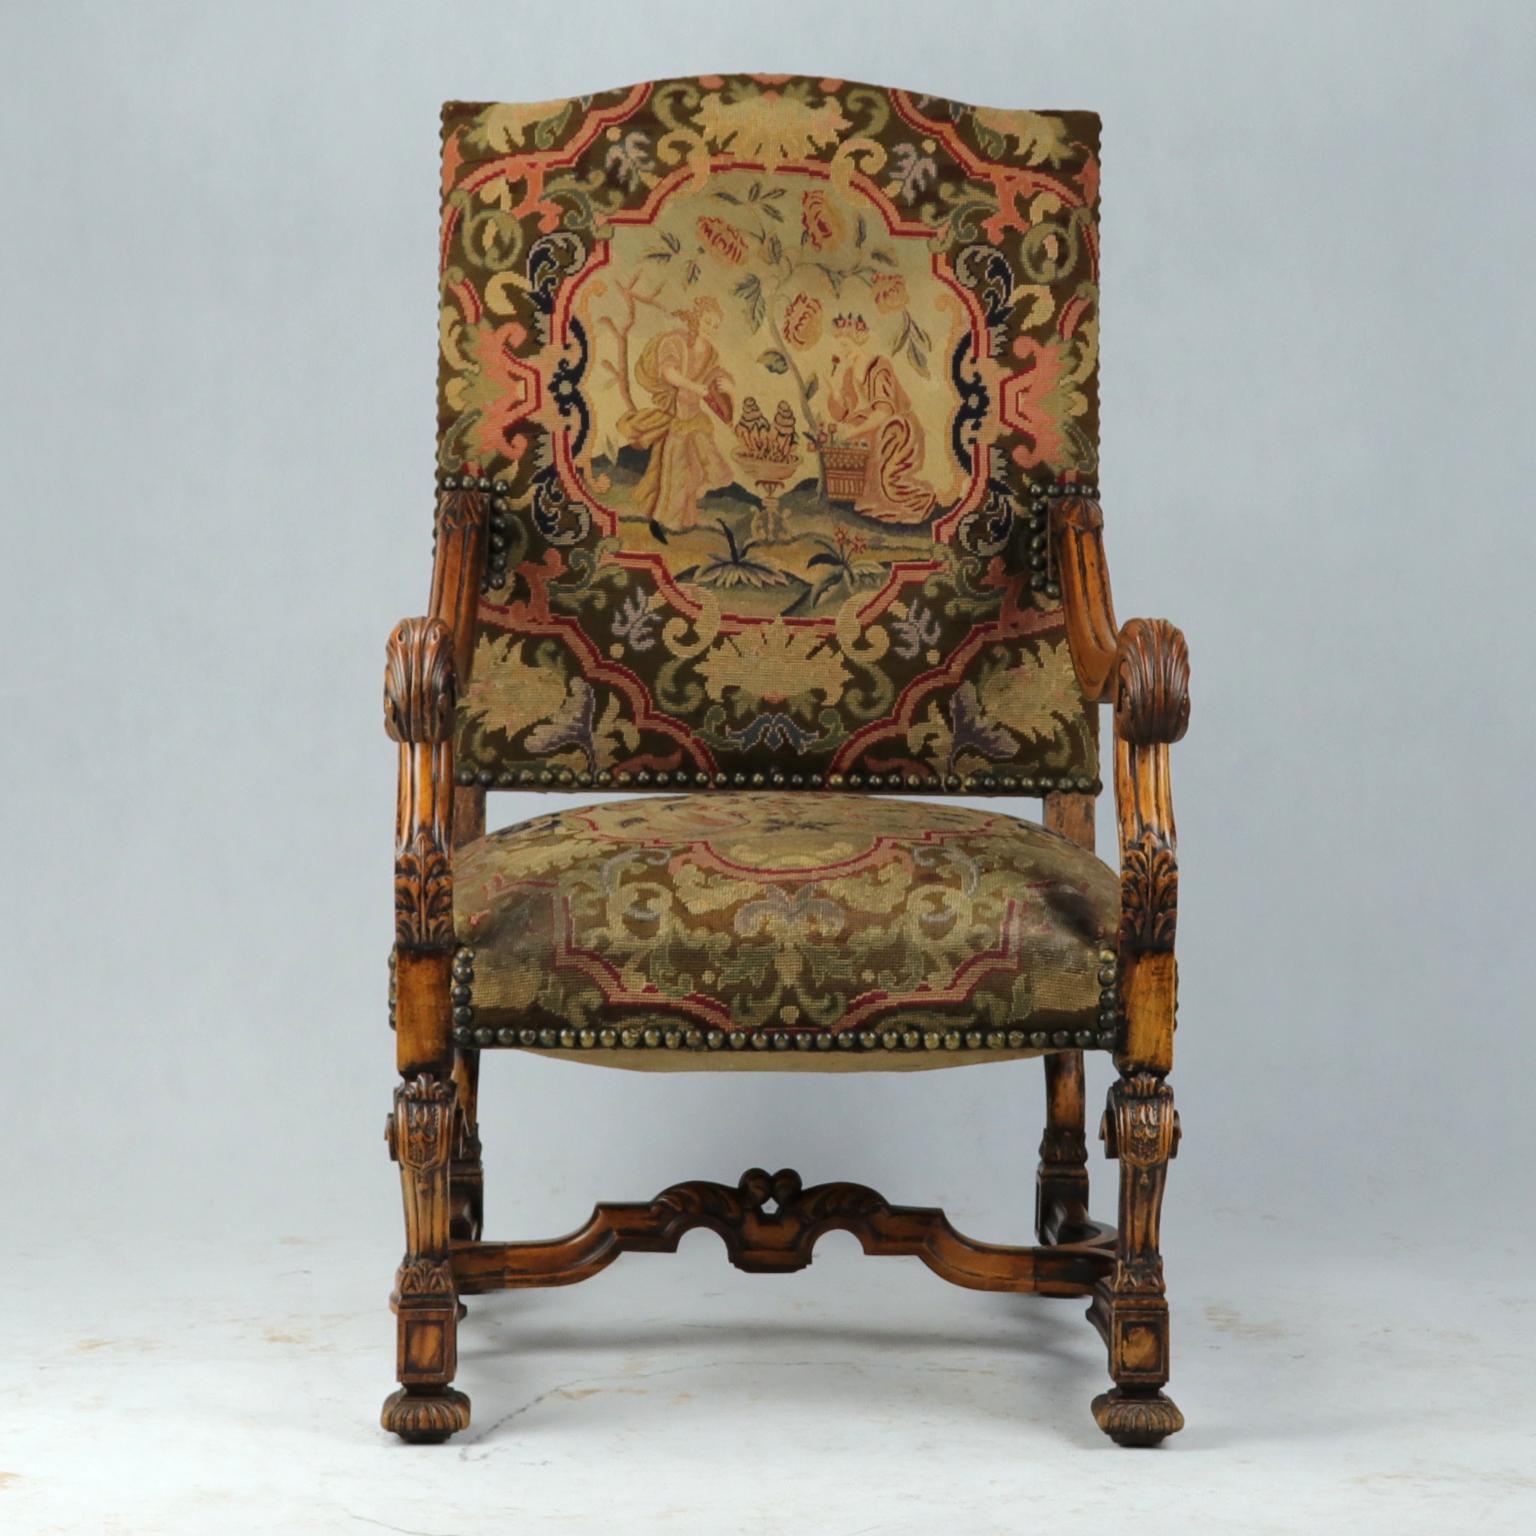 Un très bon grand fauteuil Louis XIV en bois fruitier avec un haut dossier rectangulaire légèrement incliné et une assise rembourrée. Avec des bras à volutes sculptés de motifs floraux. Sur des pieds sculptés reliés par un châssis en forme de 